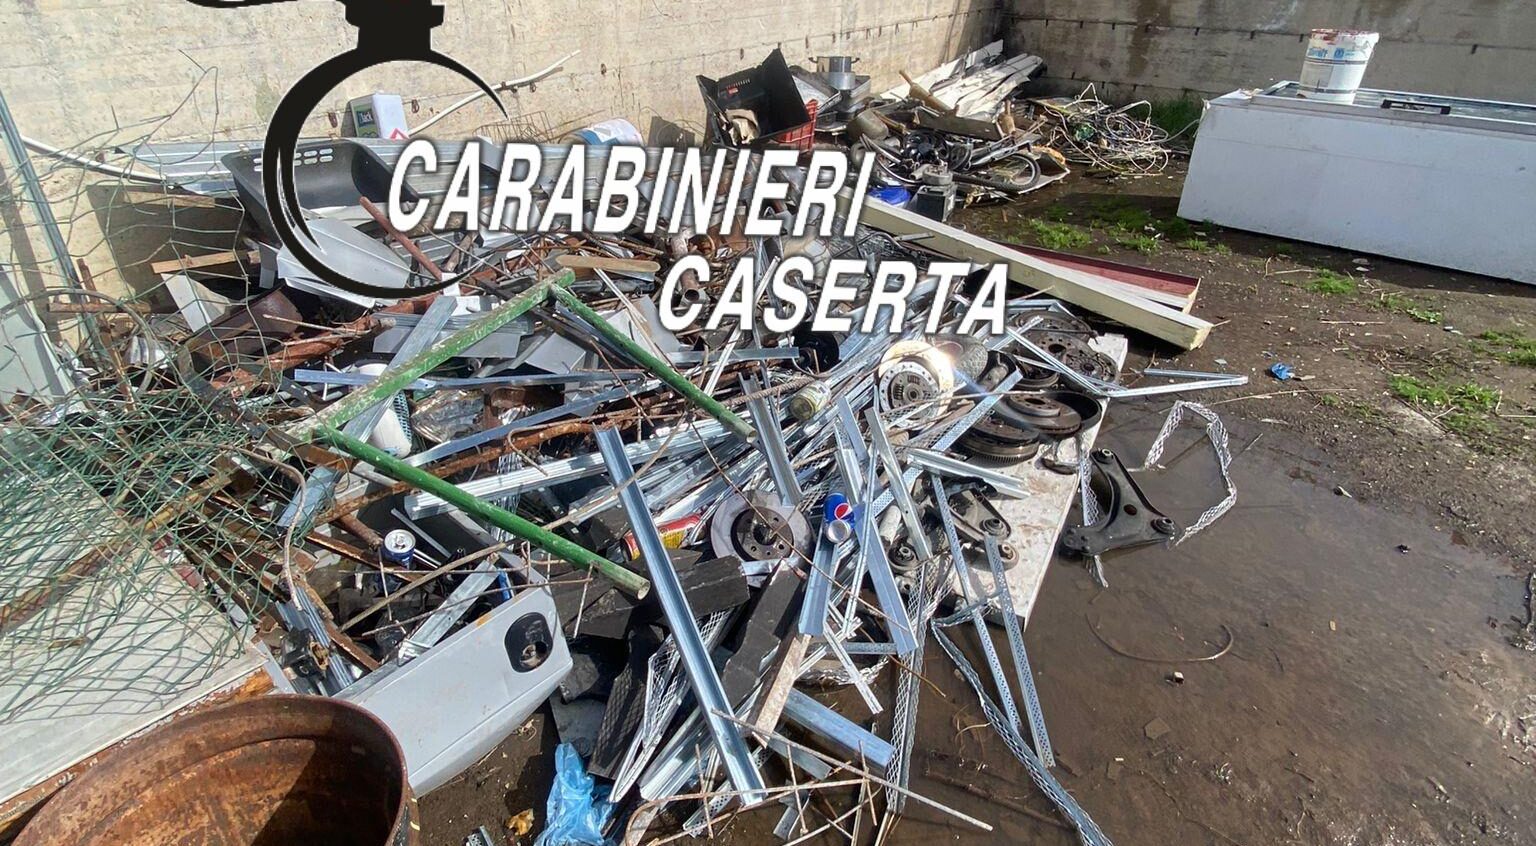 Villa di Briano (CE), i Carabinieri individuano una discarica abusiva. 51enne denunciato per gestione di rifiuti non autorizzata.